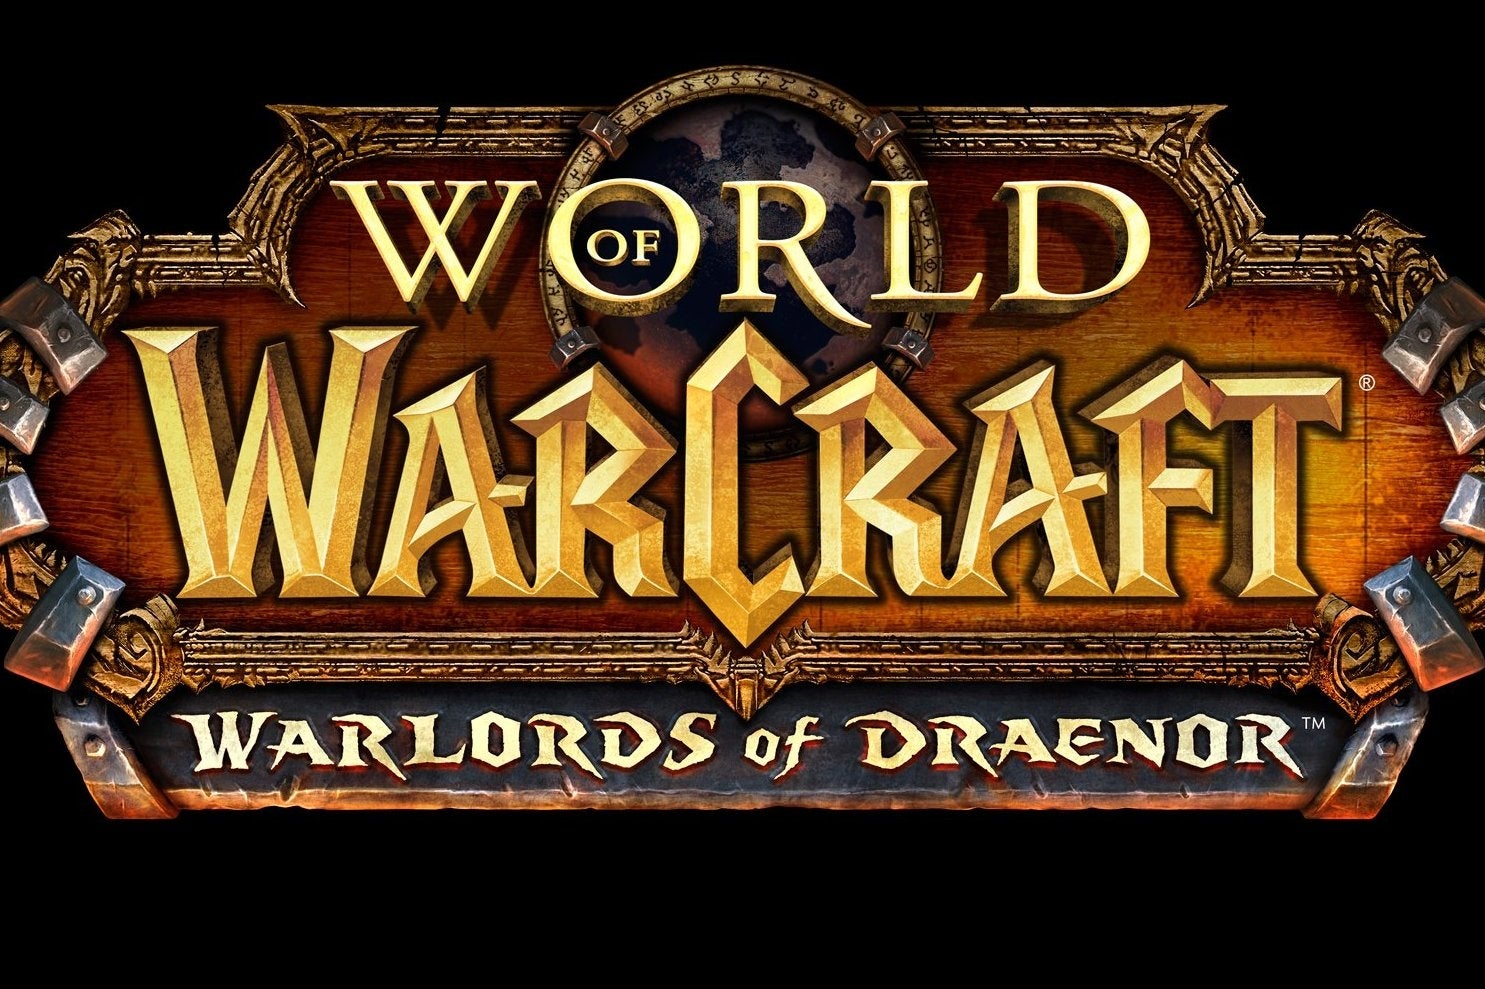 Imagem para Atualização 6.1 para World of Warcraft chega na próxima semana